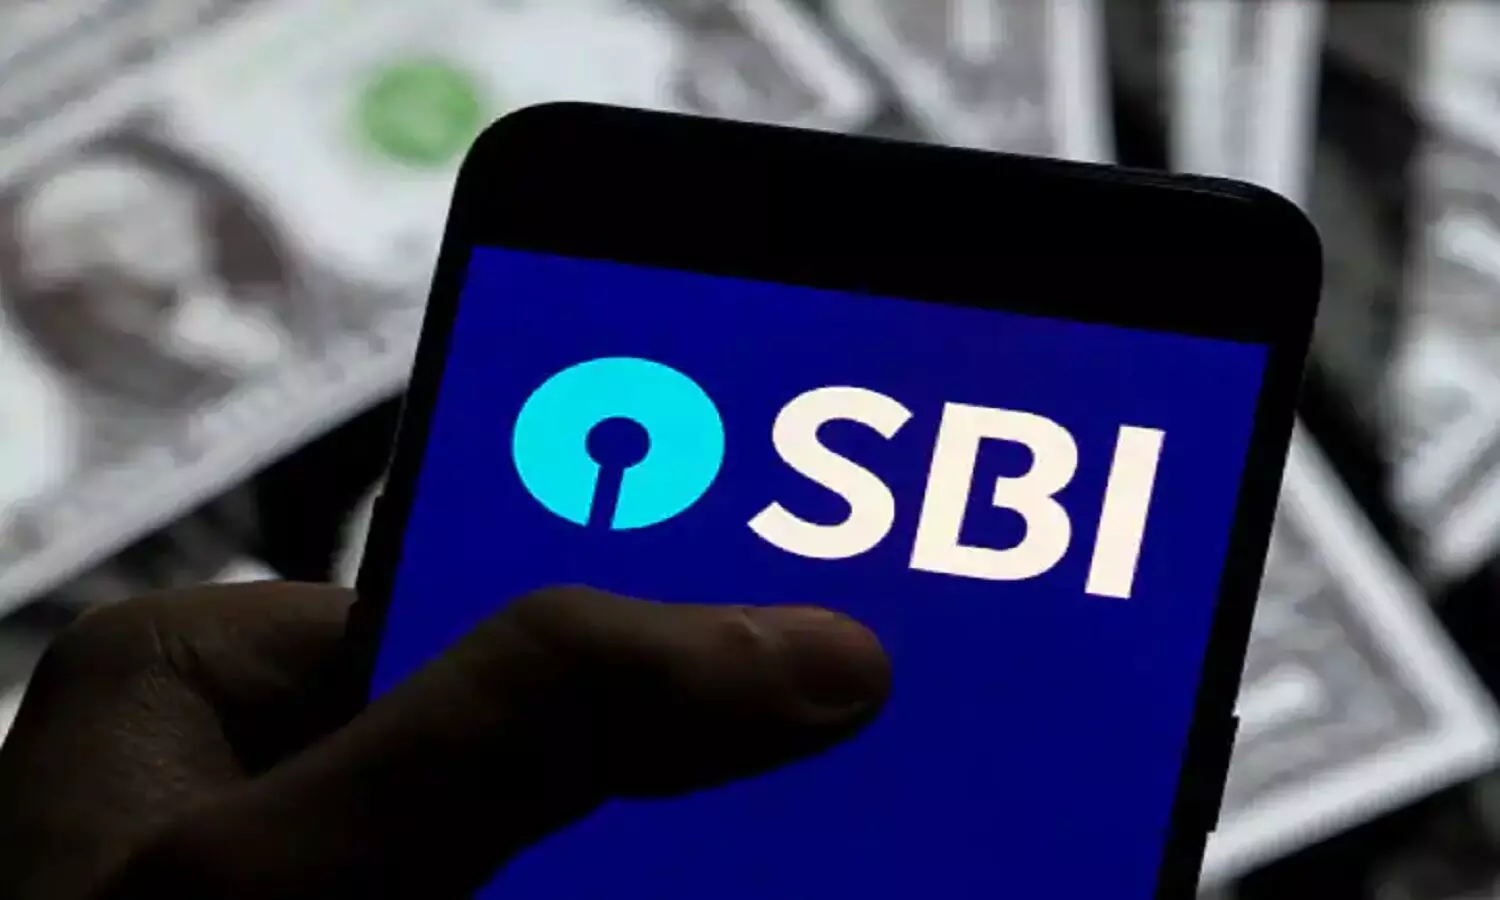 SBI YONO App: घर बैठे भारतीय स्टेट बैंक अपने ग्राहकों को दे रहा 35 लाख रुपए, आप भी हैं खाताधारक तो करें यह कार्य